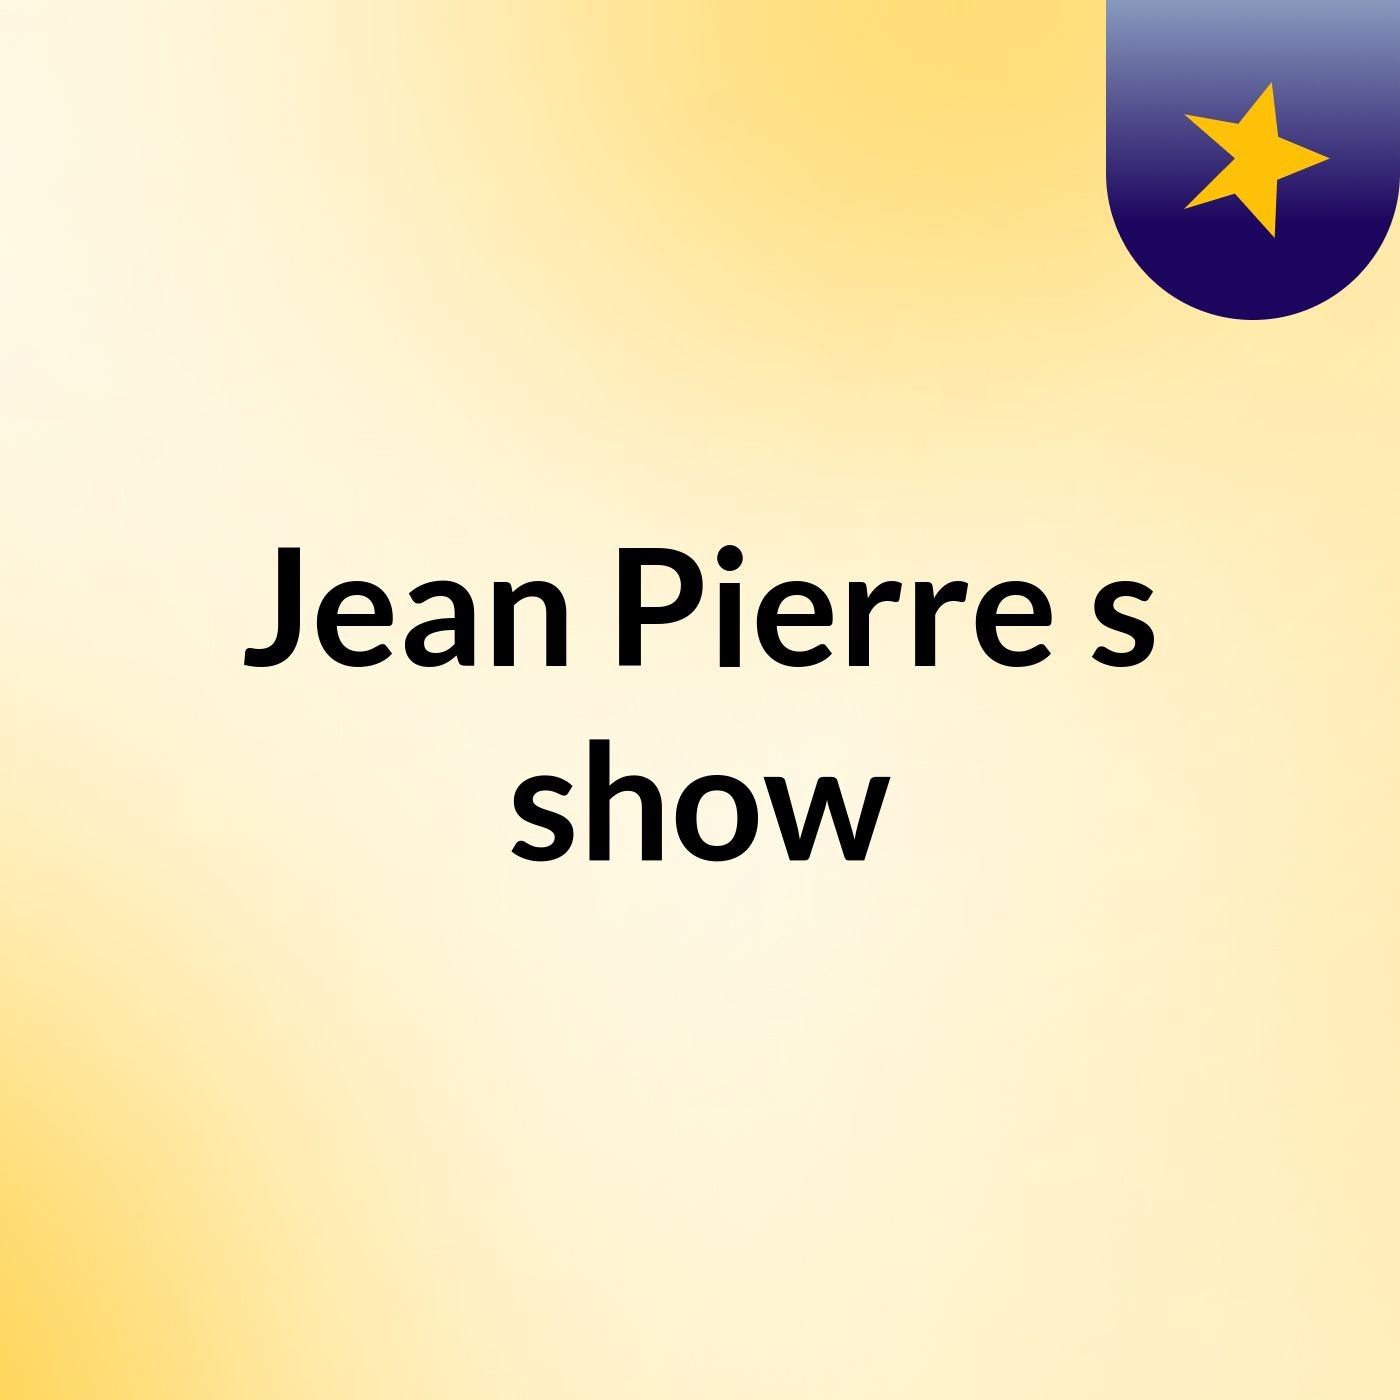 Jean Pierre's show